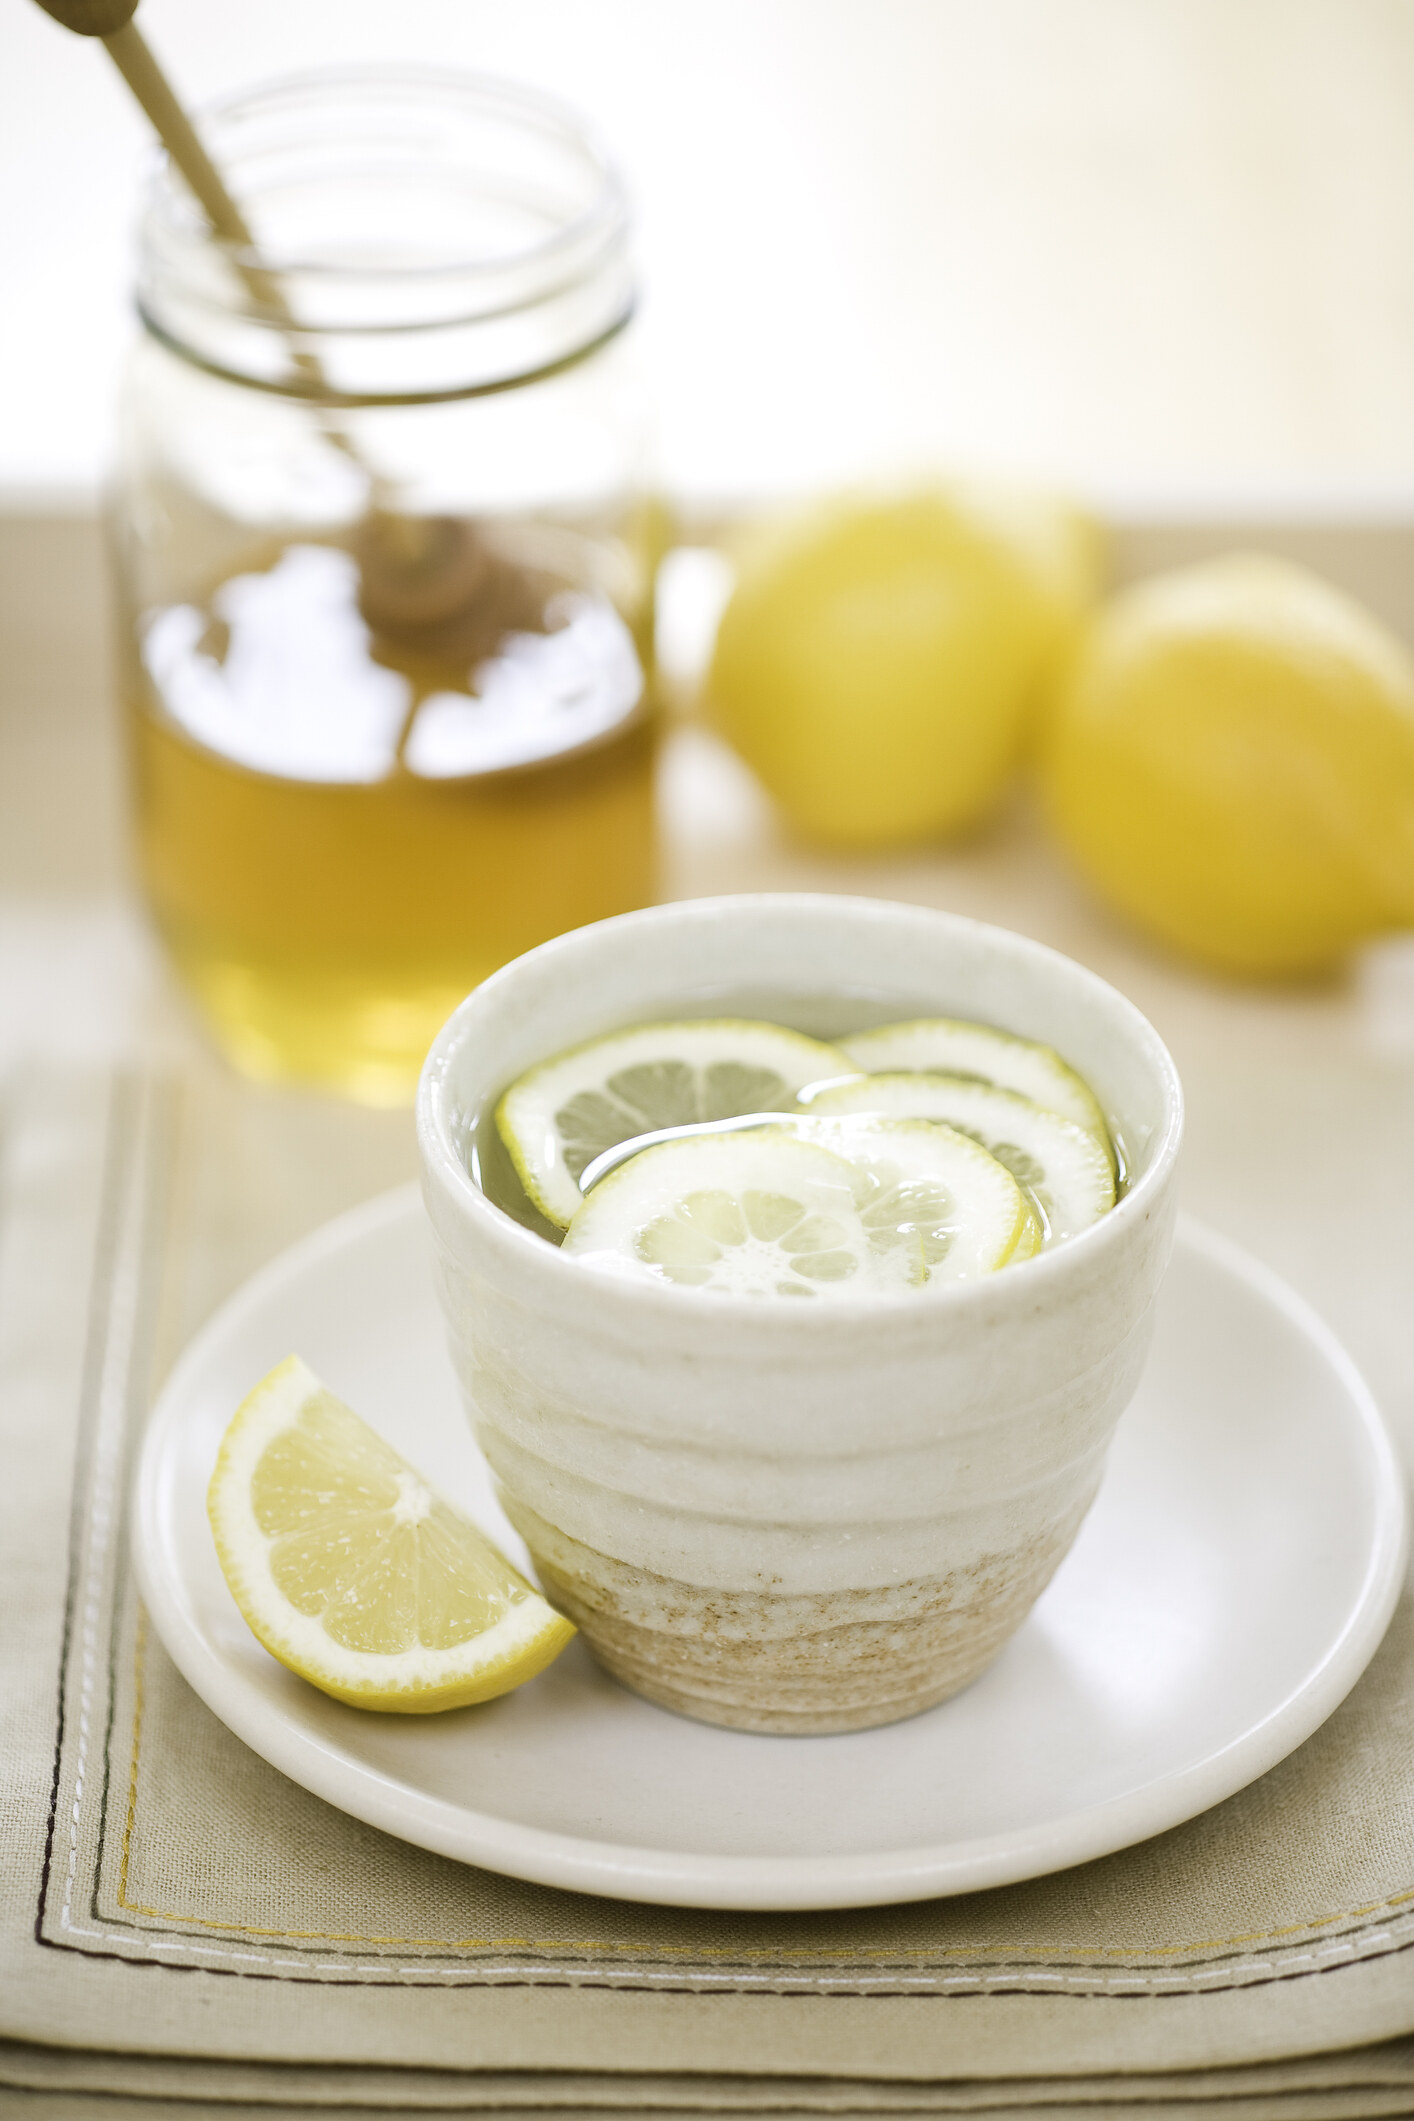 用溫水沖泡檸檬水味道更佳。